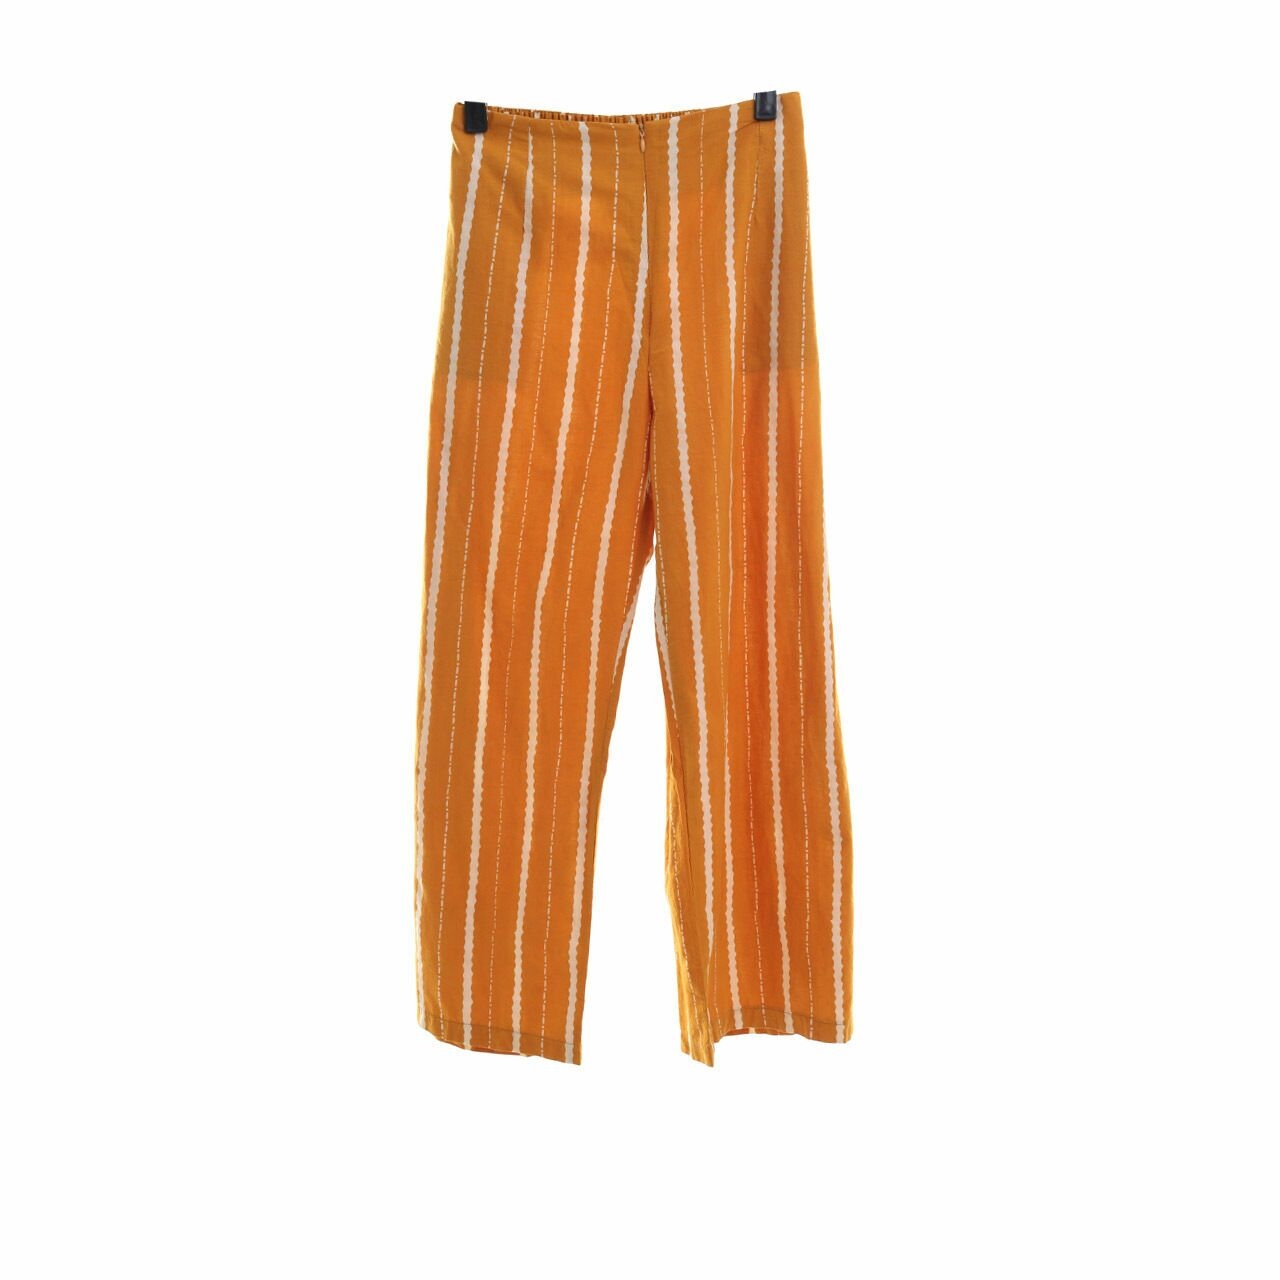 Oemah Etnik Mustard & Brown Long Pants